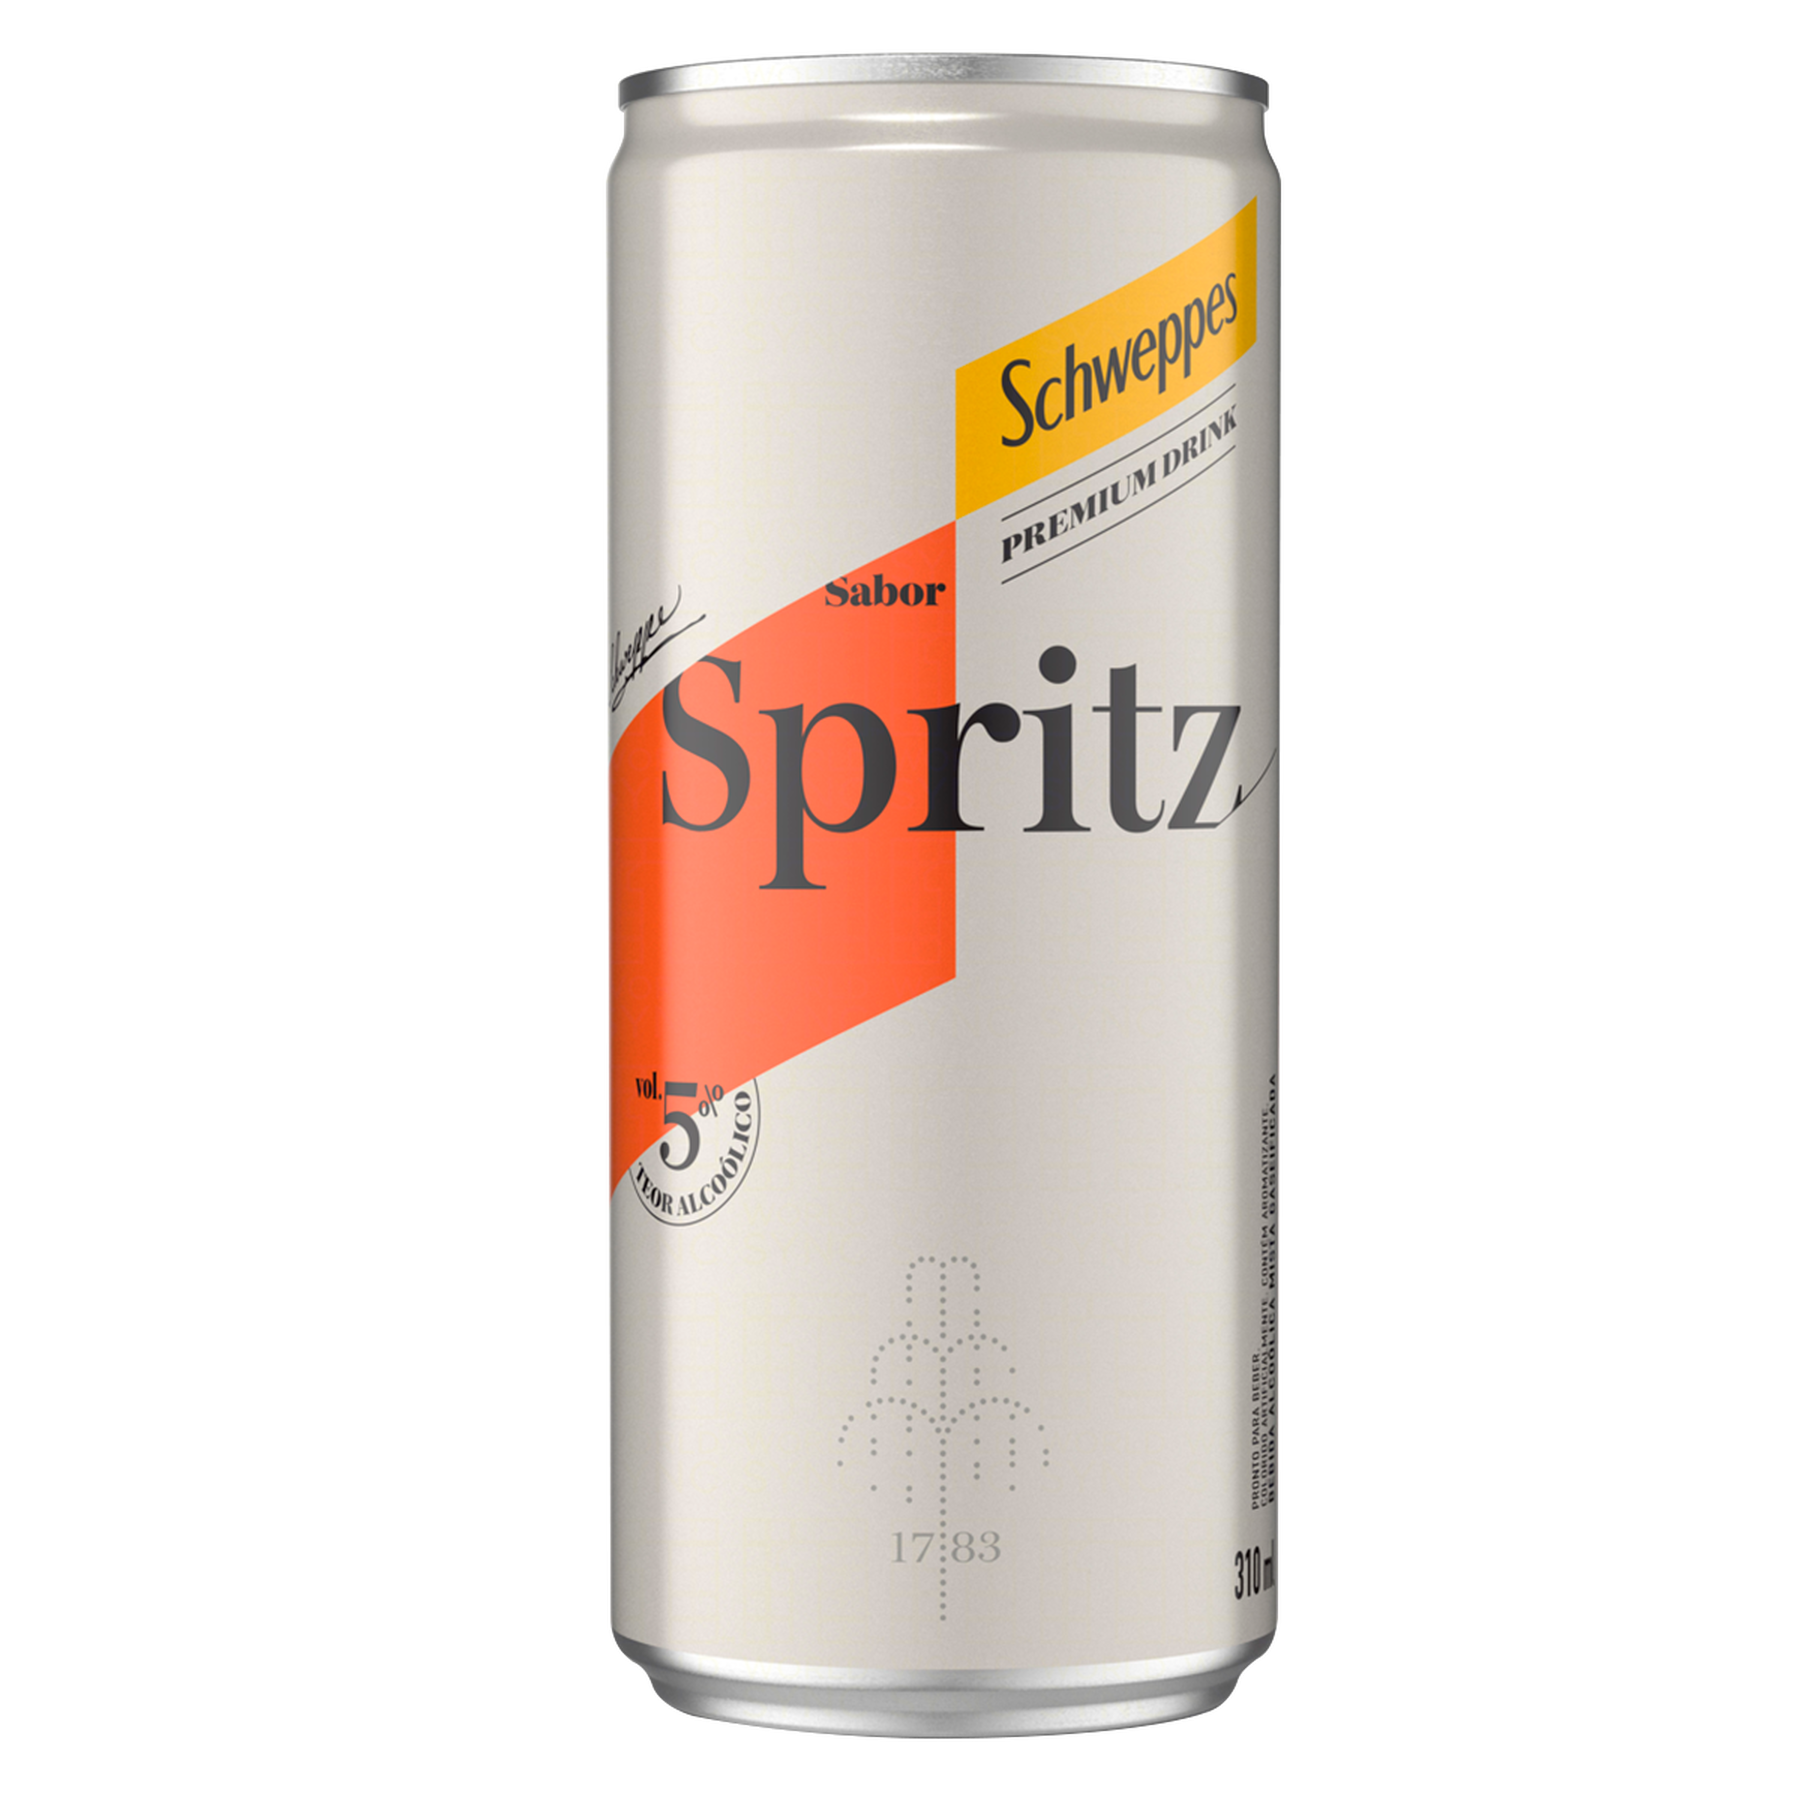 Spritz Schweppes Premium Drink Lata 310ml